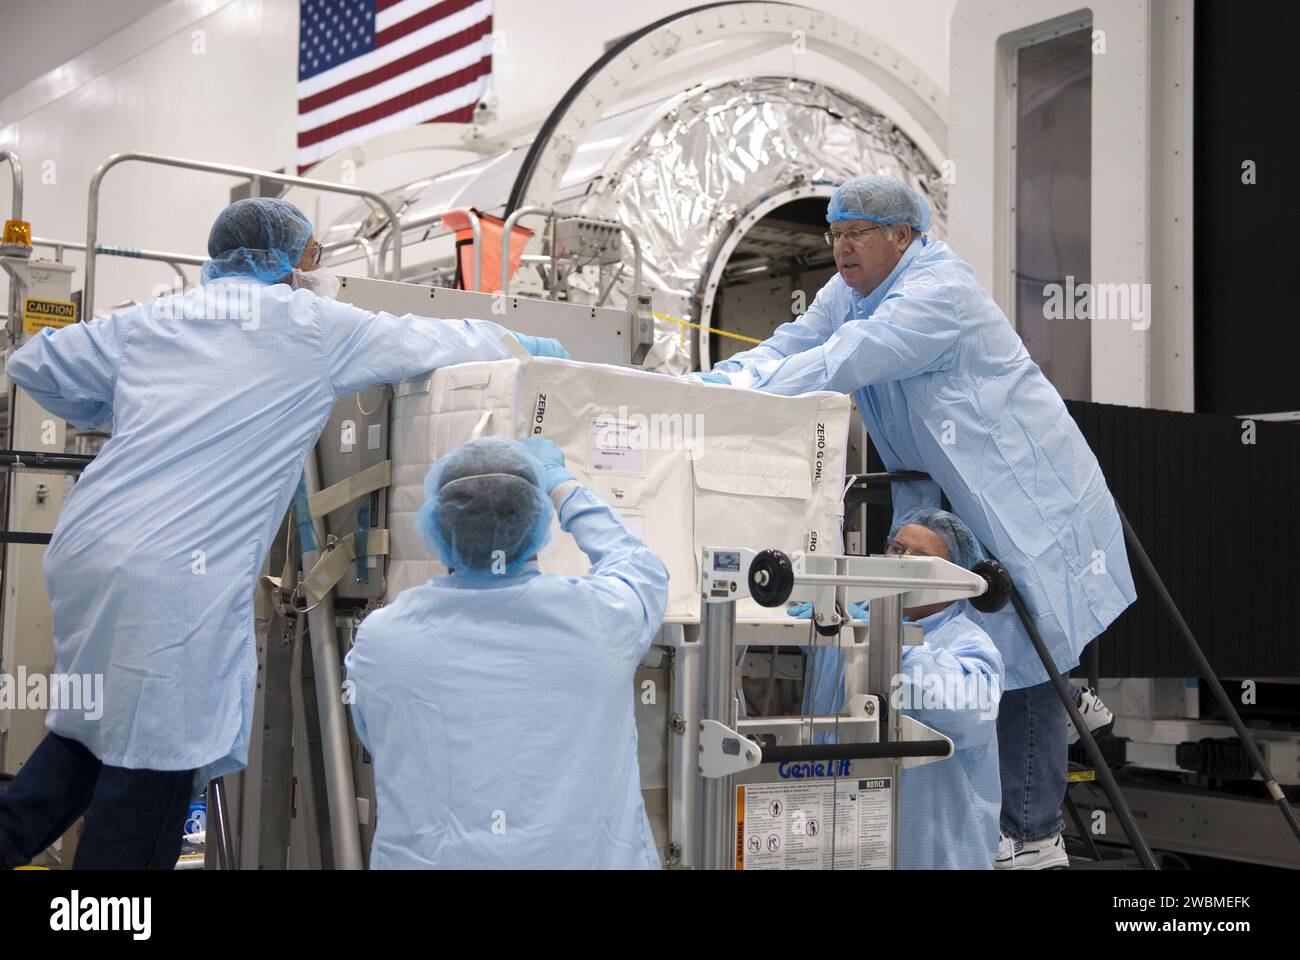 CAPE CANAVERAL, Fla. -- in der Space Station Processing Facility im Kennedy Space Center der NASA in Florida laden Techniker einen Frachtbeutel auf eine Nachschub-Staufach-Plattform. Die Plattform und ihre Ladung werden im Hintergrund im Multifunktions-Logistikmodul Raffaello für den Flug des Space Shuttle Atlantis zur Internationalen Raumstation installiert. Atlantis und seine Nutzlast werden für die STS-135-Mission vorbereitet, die Raffaello mit Vorräten und Ersatzteilen zur Station liefern wird. STS-135, das am 28. Juni starten soll, wird der 33. Flug von Atlantis sein, der 37. Shuttle Stockfoto